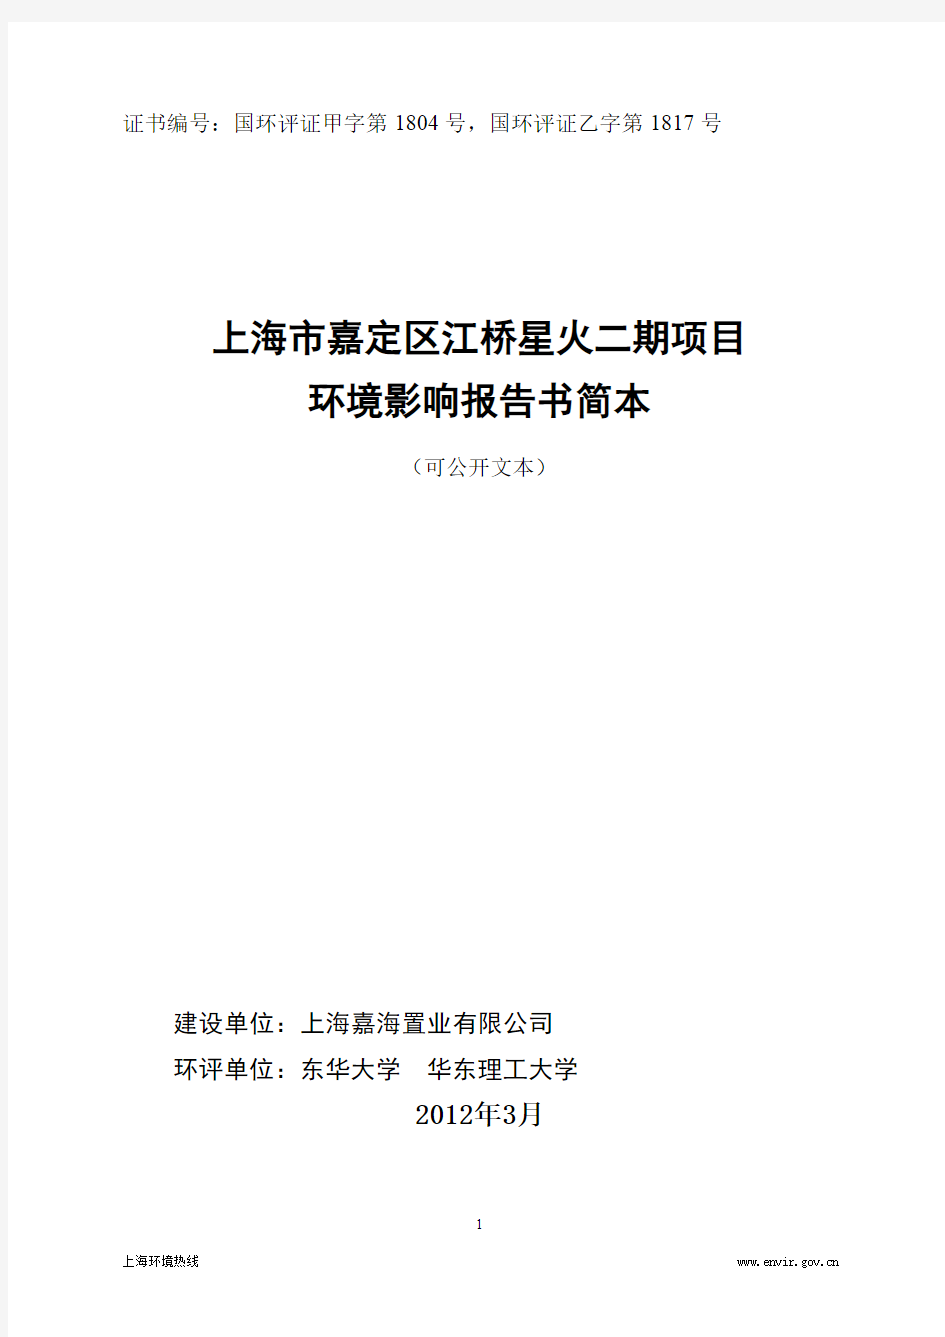 上海市嘉定区江桥星火二期项目 环境影响报告书简本